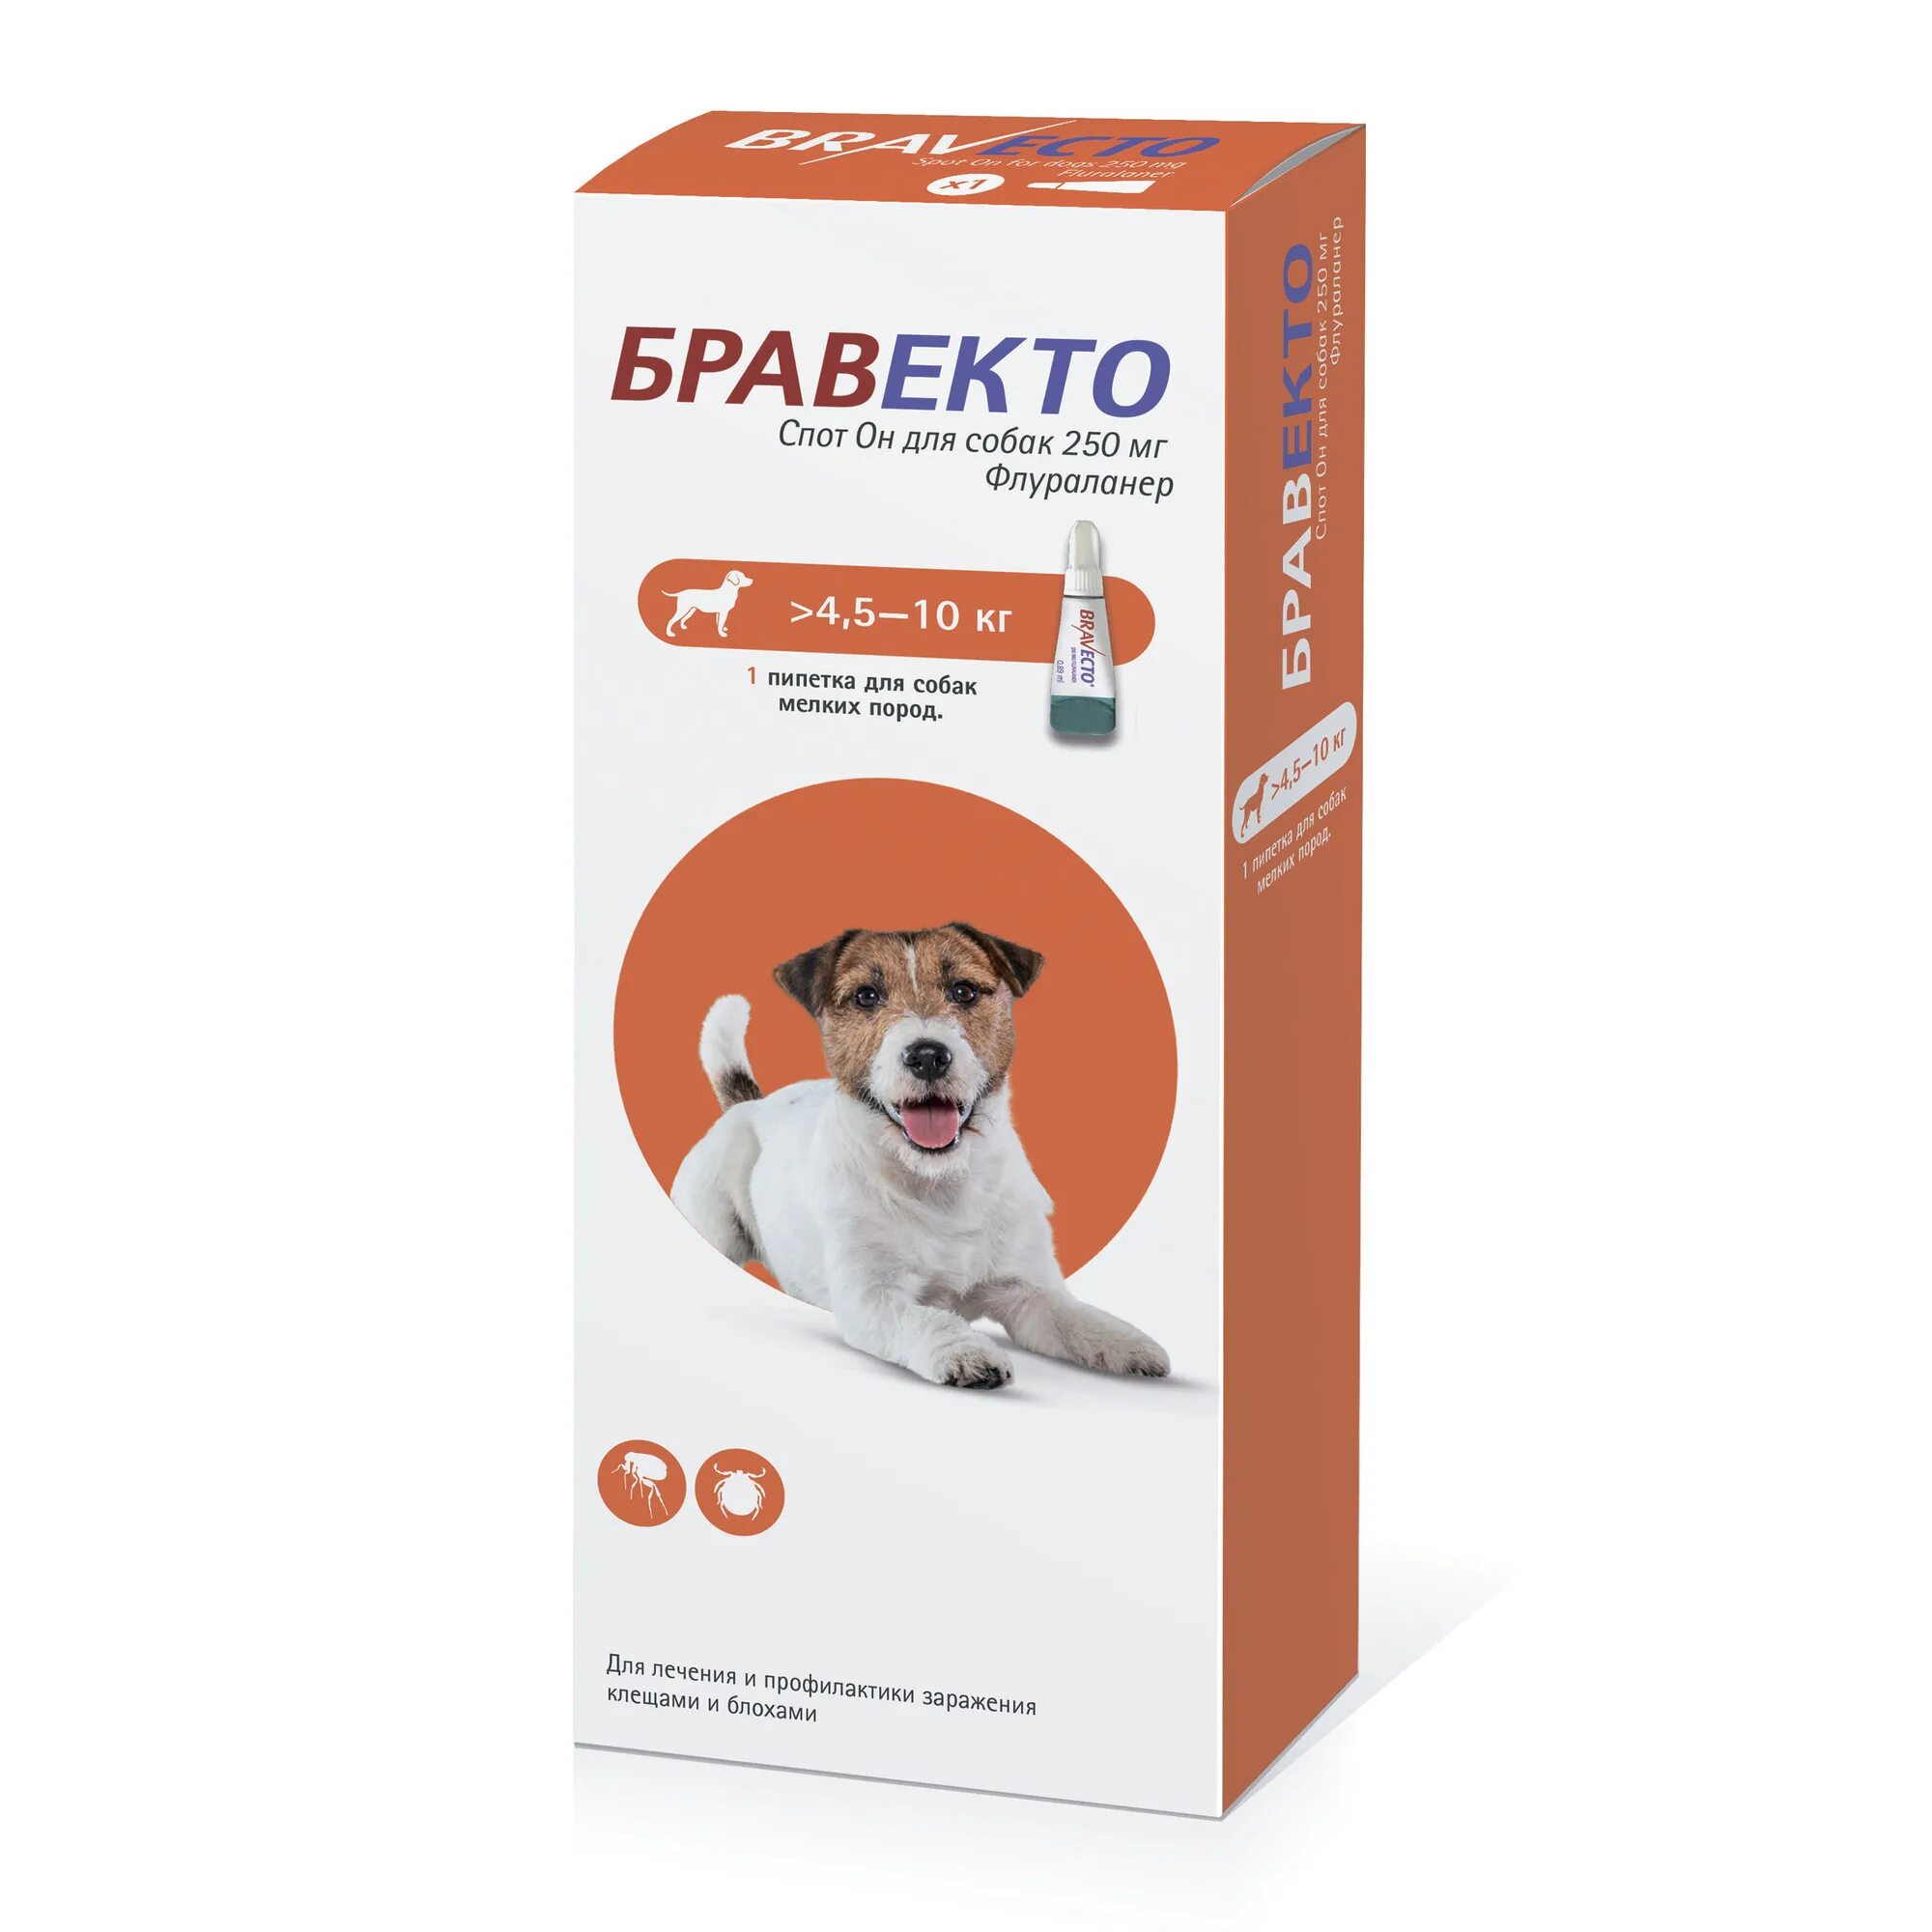 Бравекто спот он для собак (1400 мг) 40-56 кг. Бравекто для собак капли 10-20 кг. Бравекто spot-on 250 мг для собак 4.5-10 кг. Бравекто для собак таблетки 4.5-10.